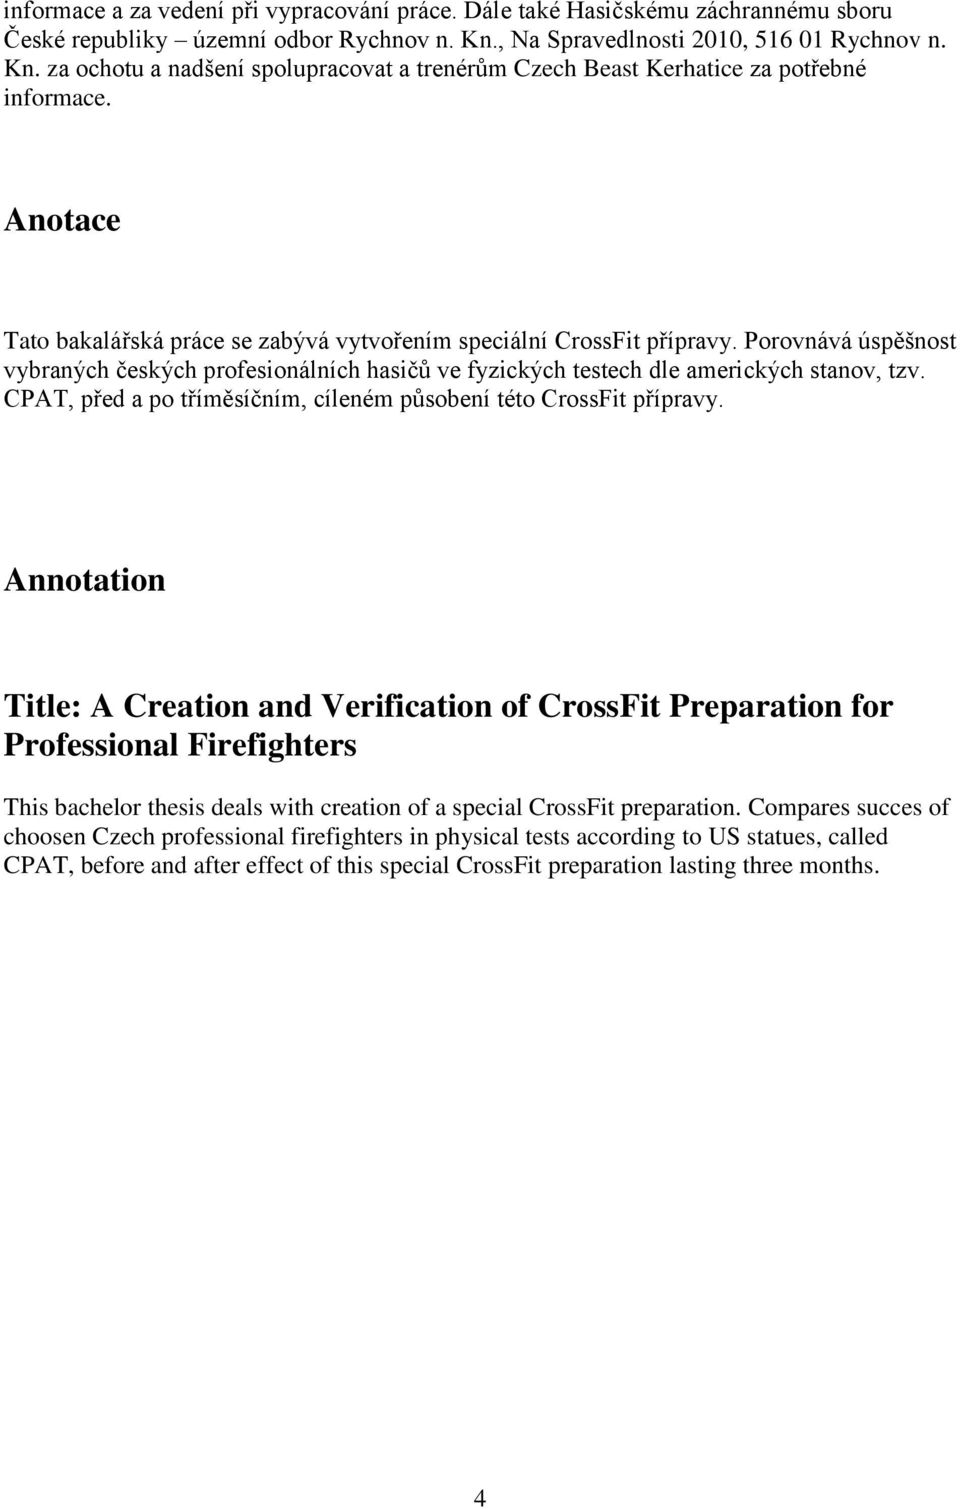 Anotace Tato bakalářská práce se zabývá vytvořením speciální CrossFit přípravy. Porovnává úspěšnost vybraných českých profesionálních hasičů ve fyzických testech dle amerických stanov, tzv.